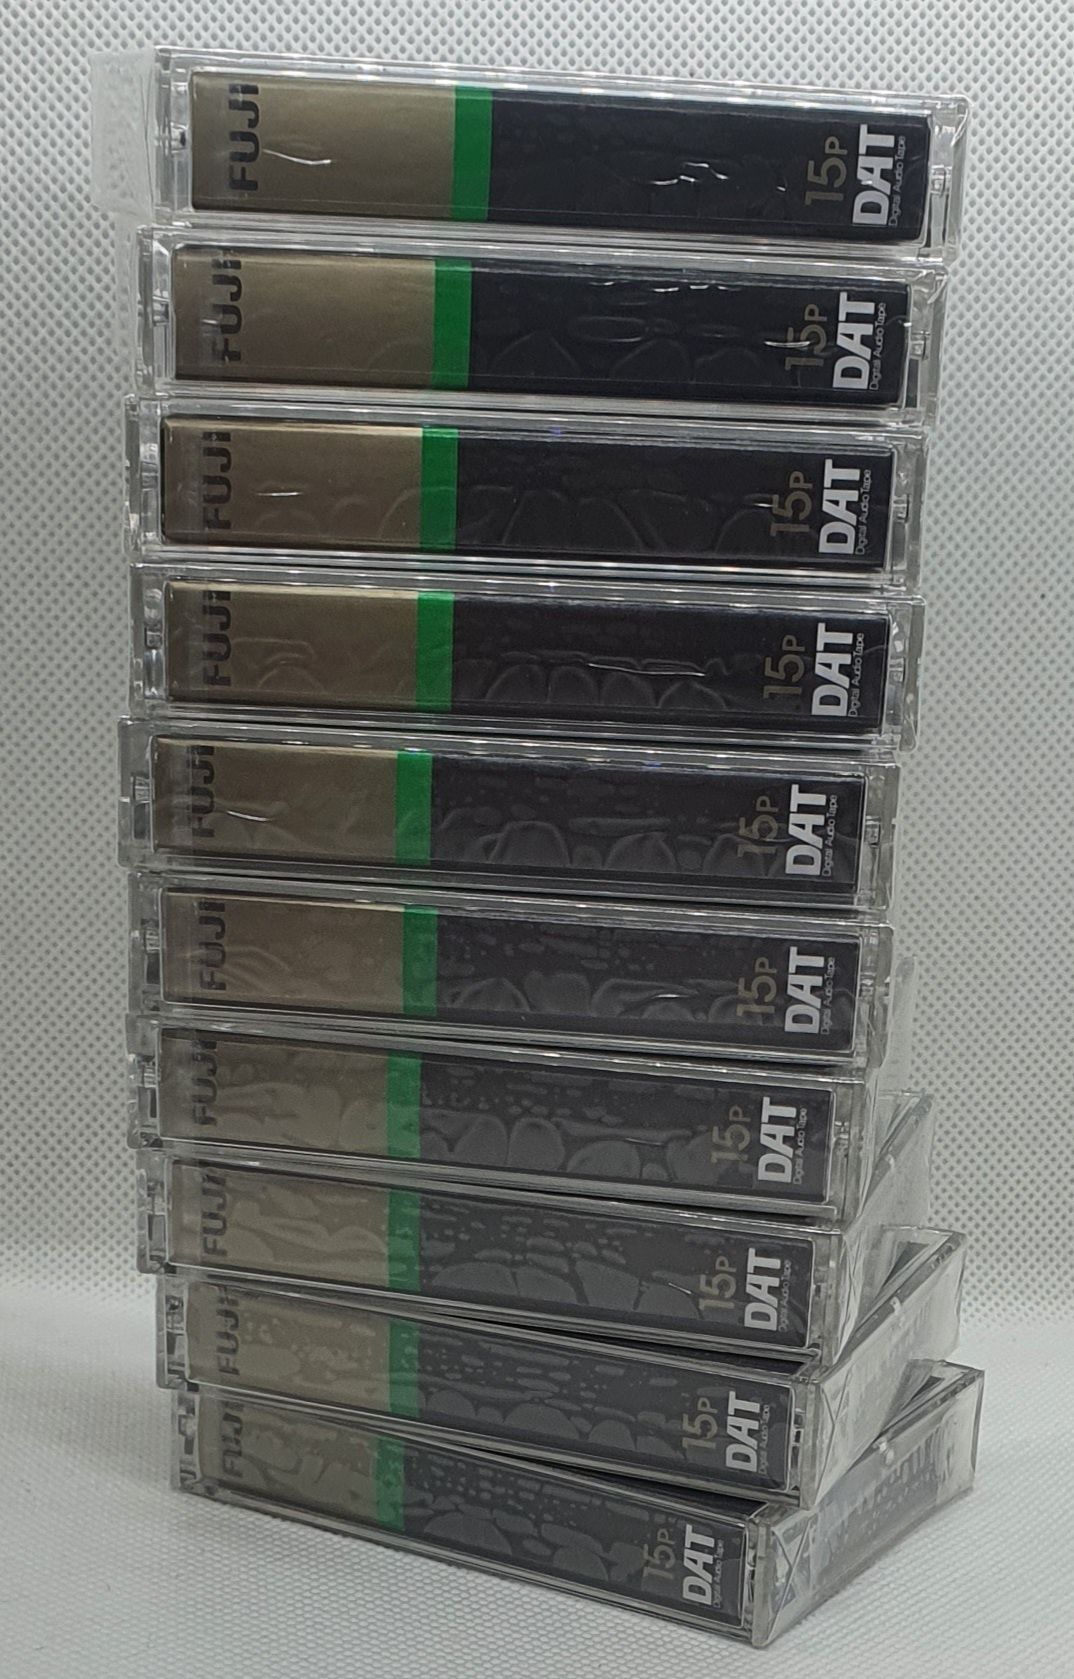 4 kasety Dat Fuji R-15p do profesjonalnego użytku -> B-stok < --